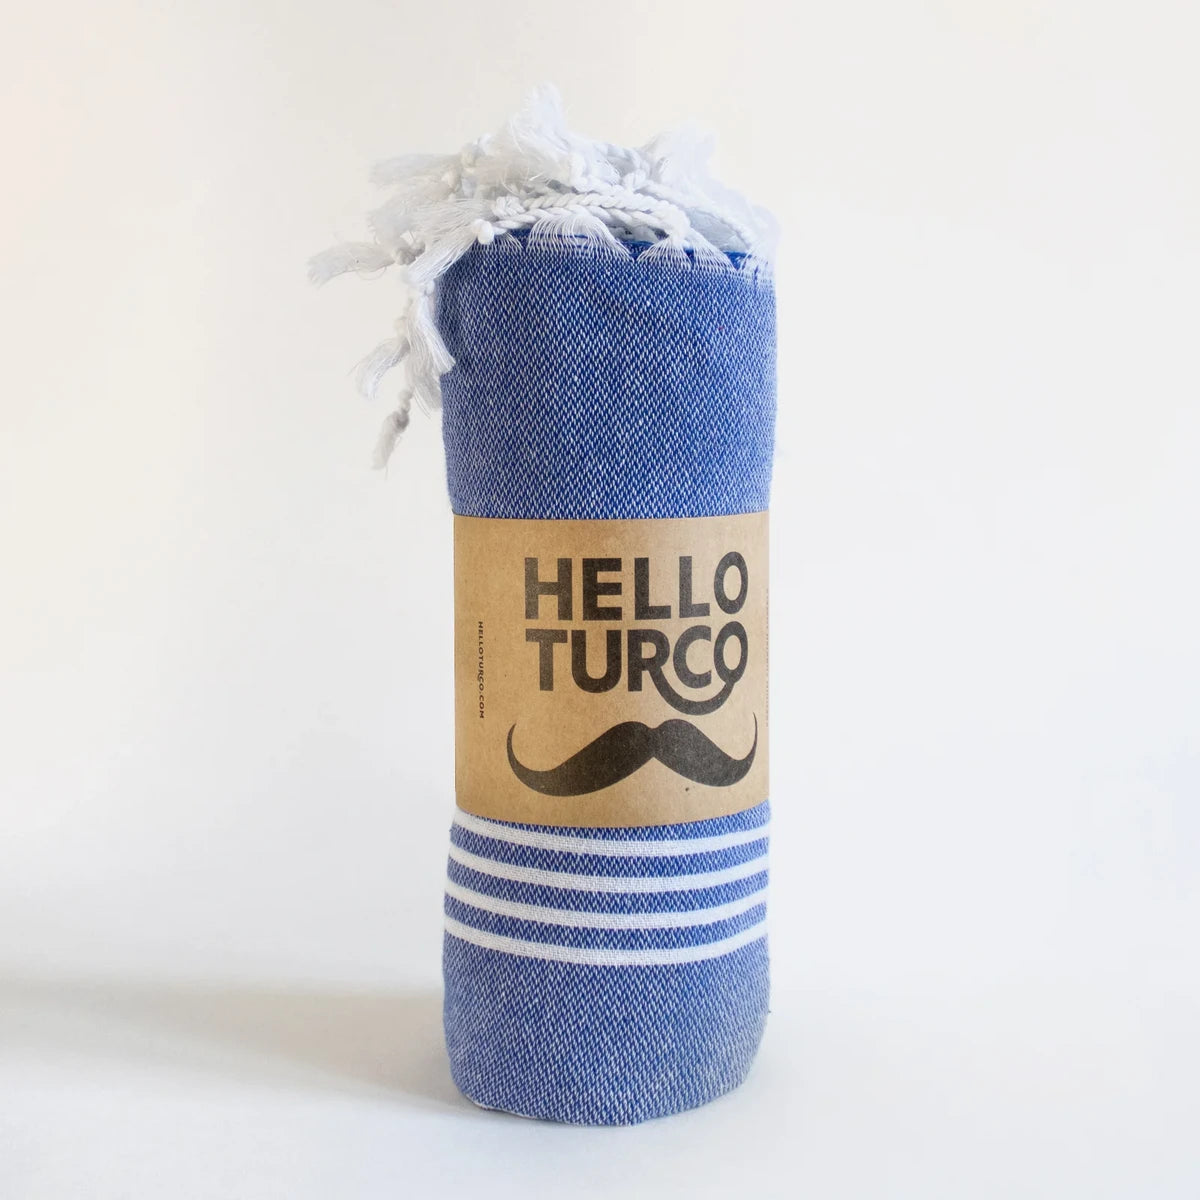 Beach Boys Blue Towel